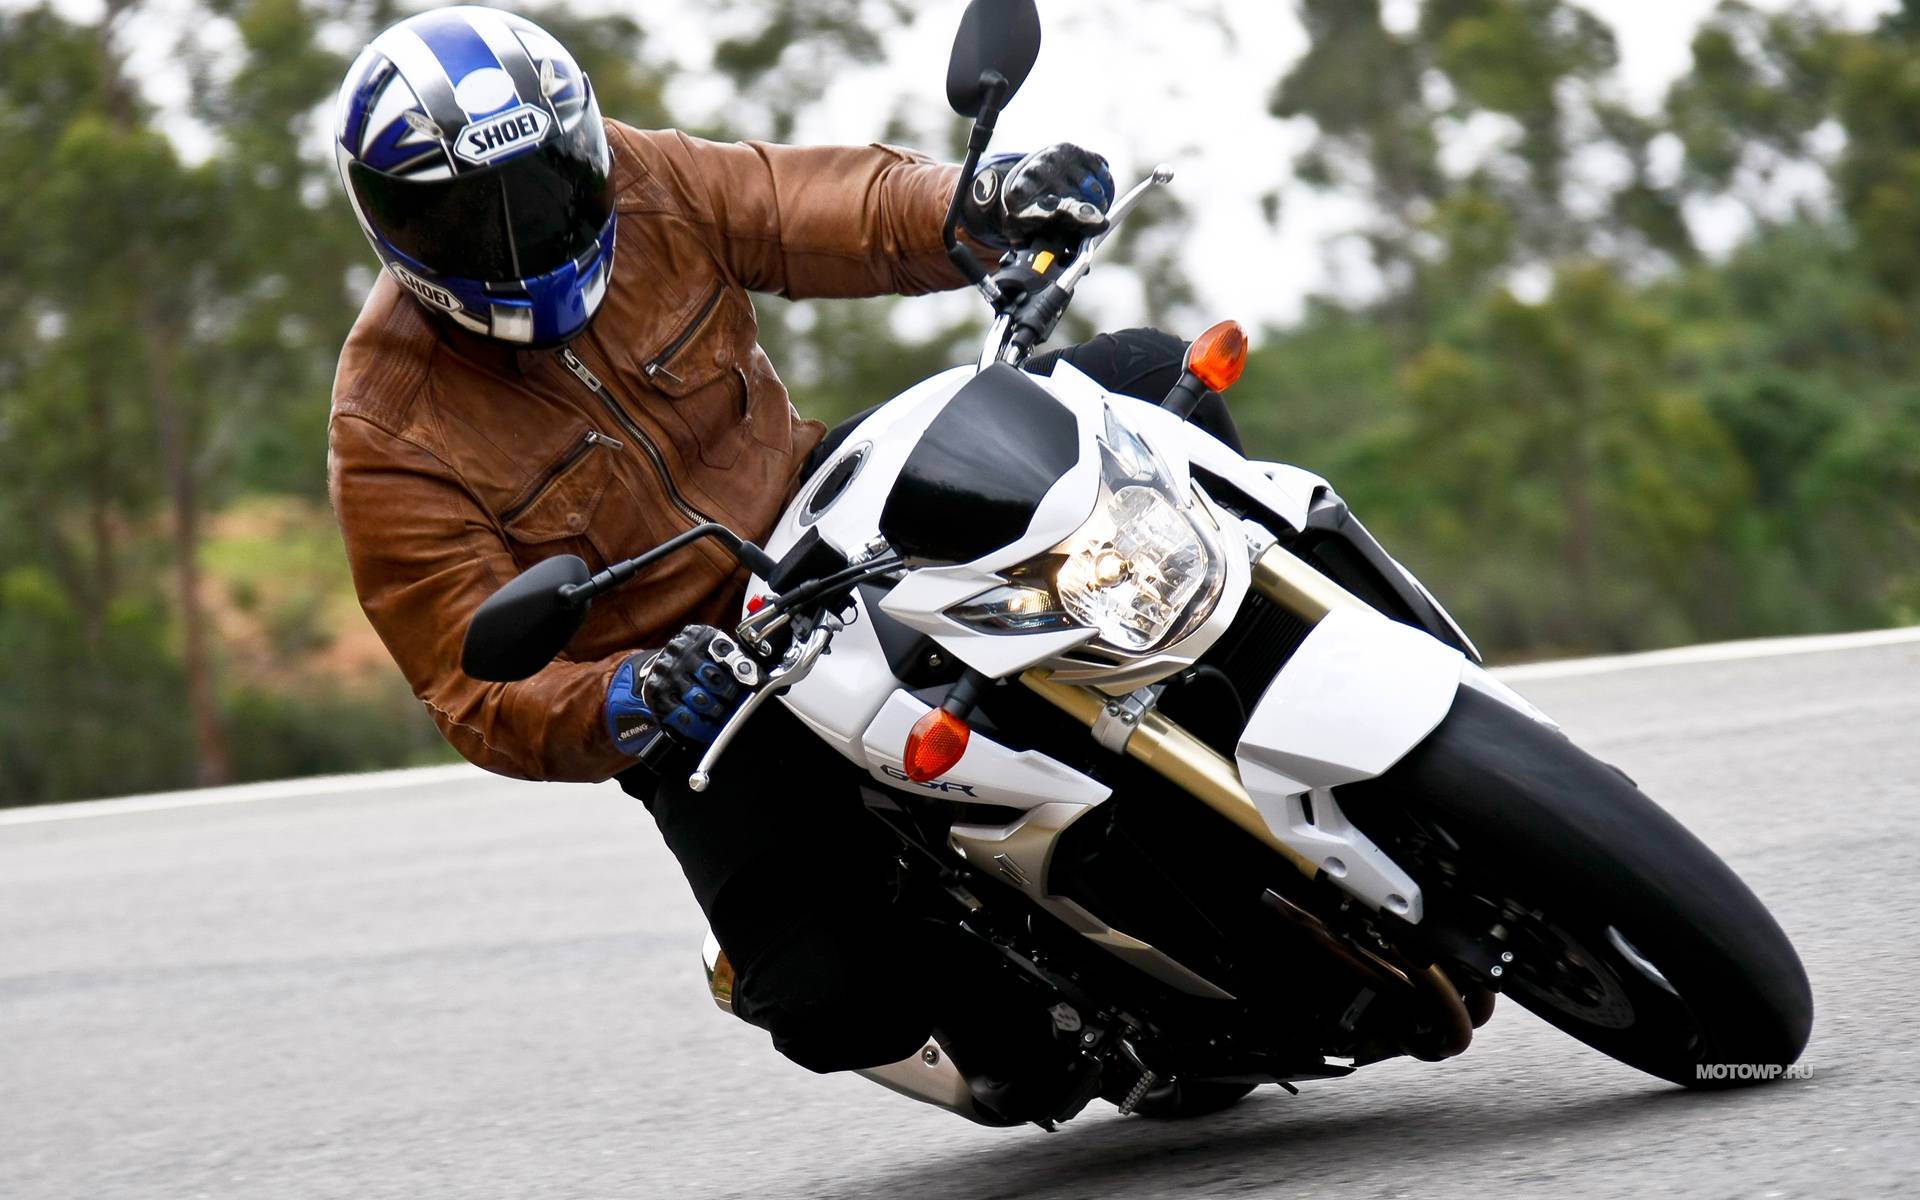 Suzuki gsr 600 motorcycle test | about motorcycles